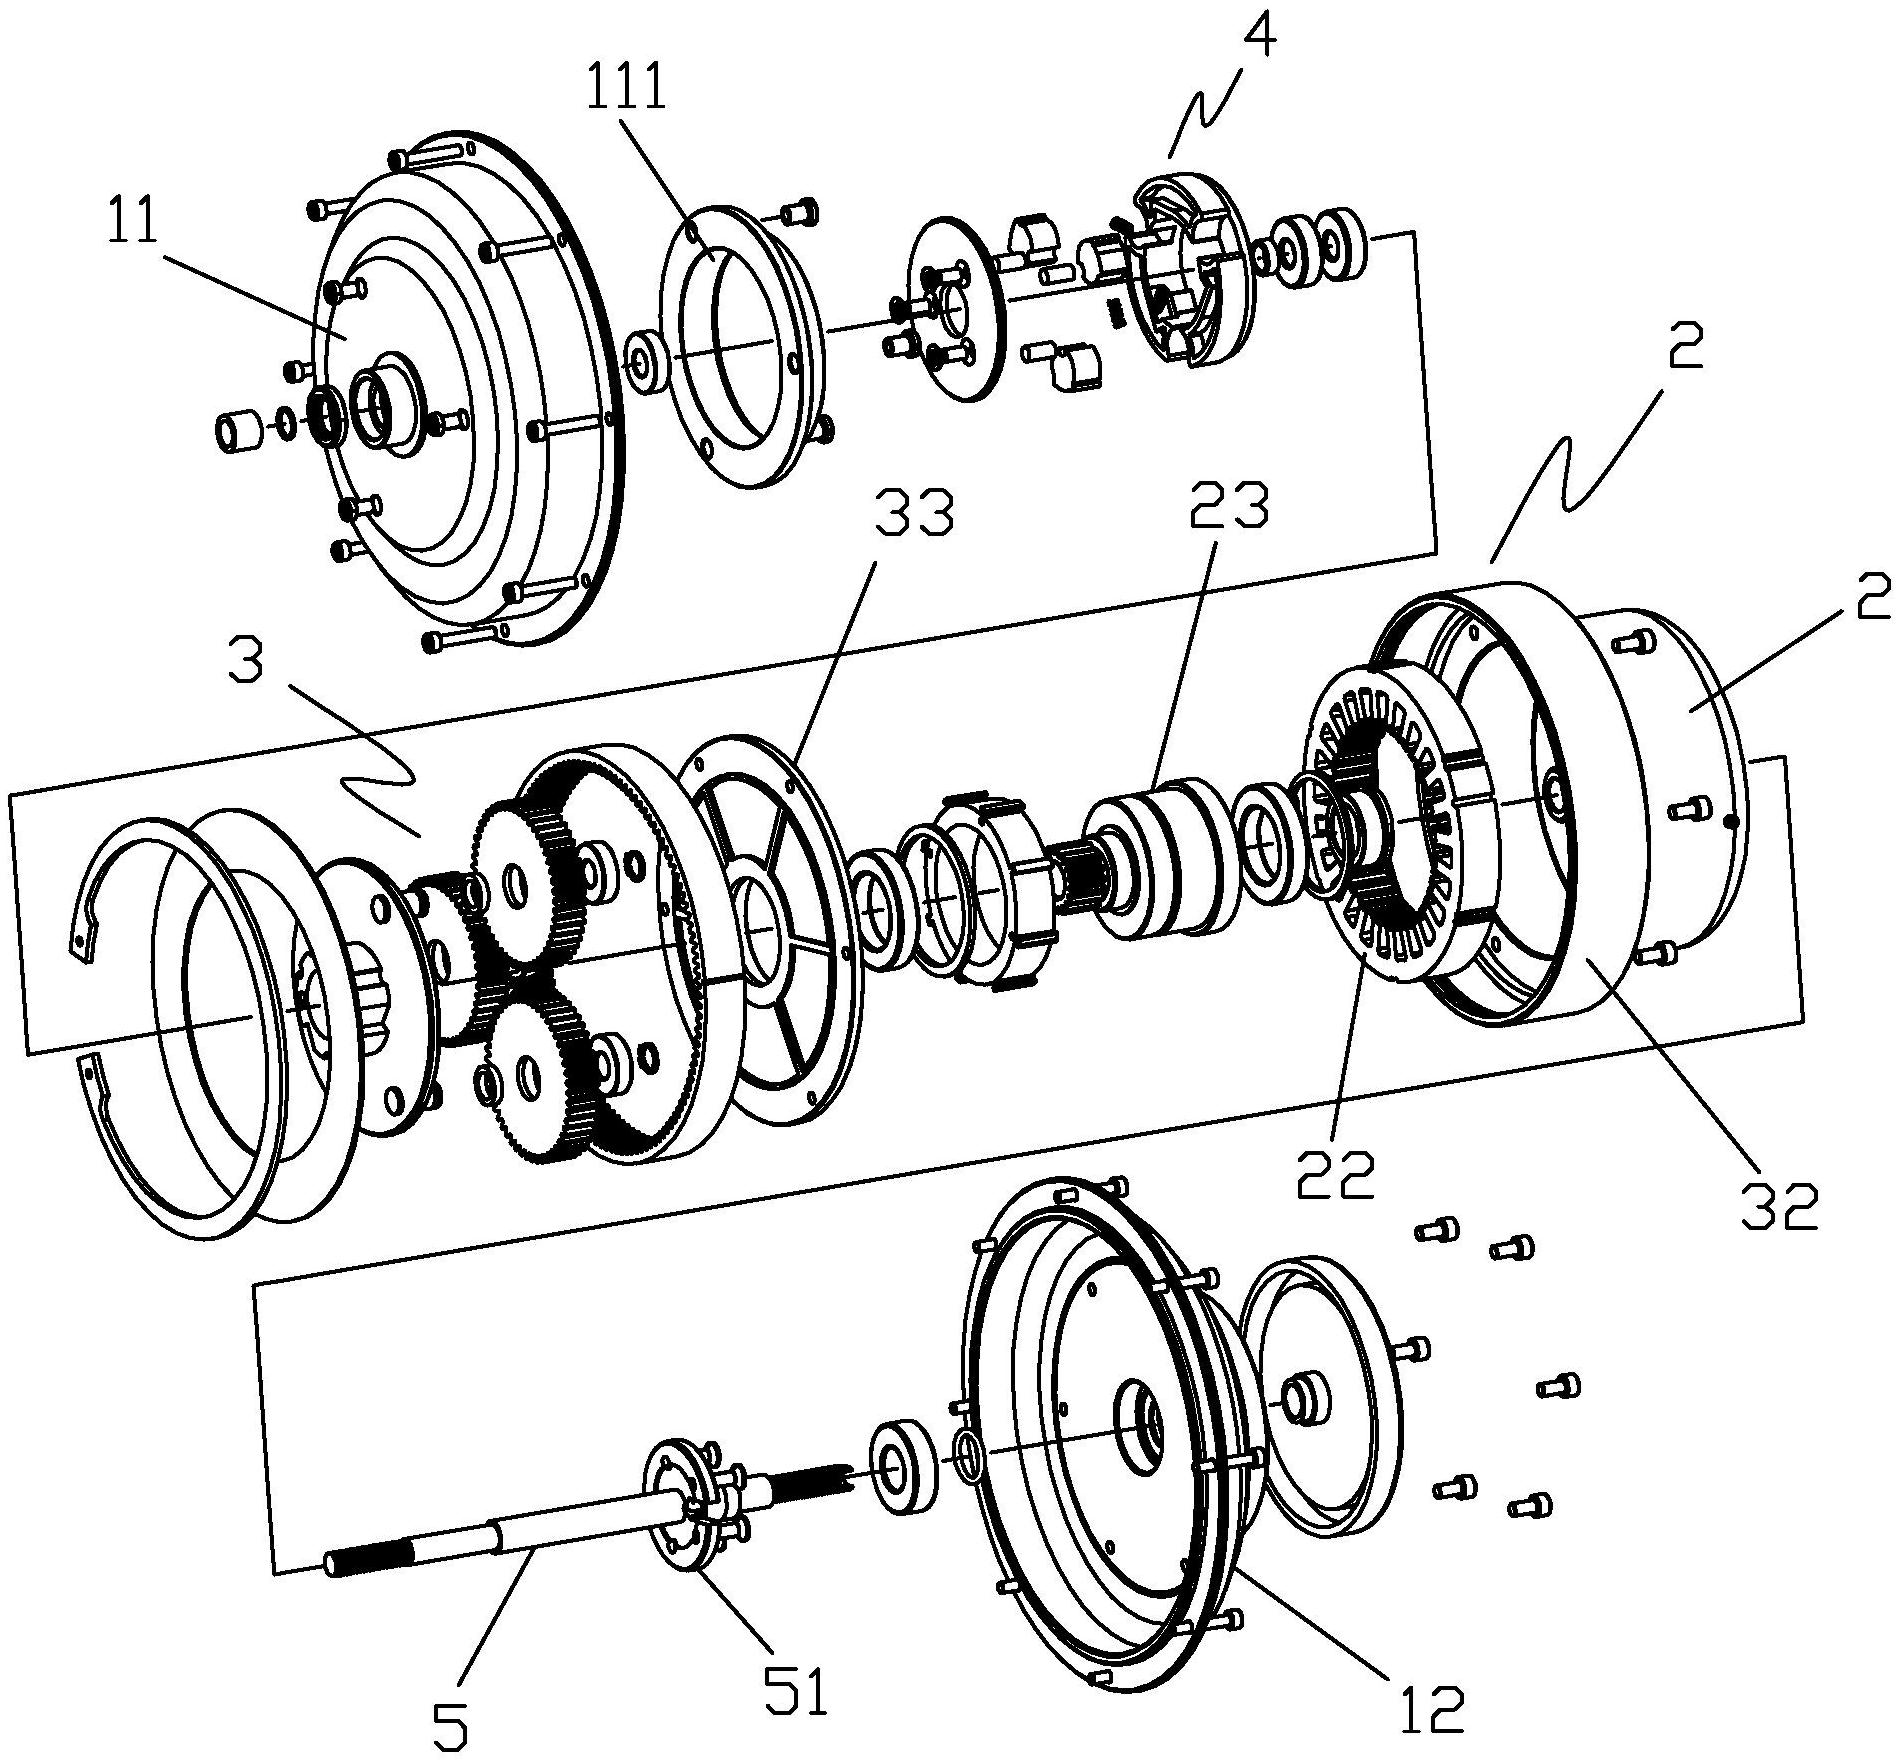 轮毂电机的原理与结构图片